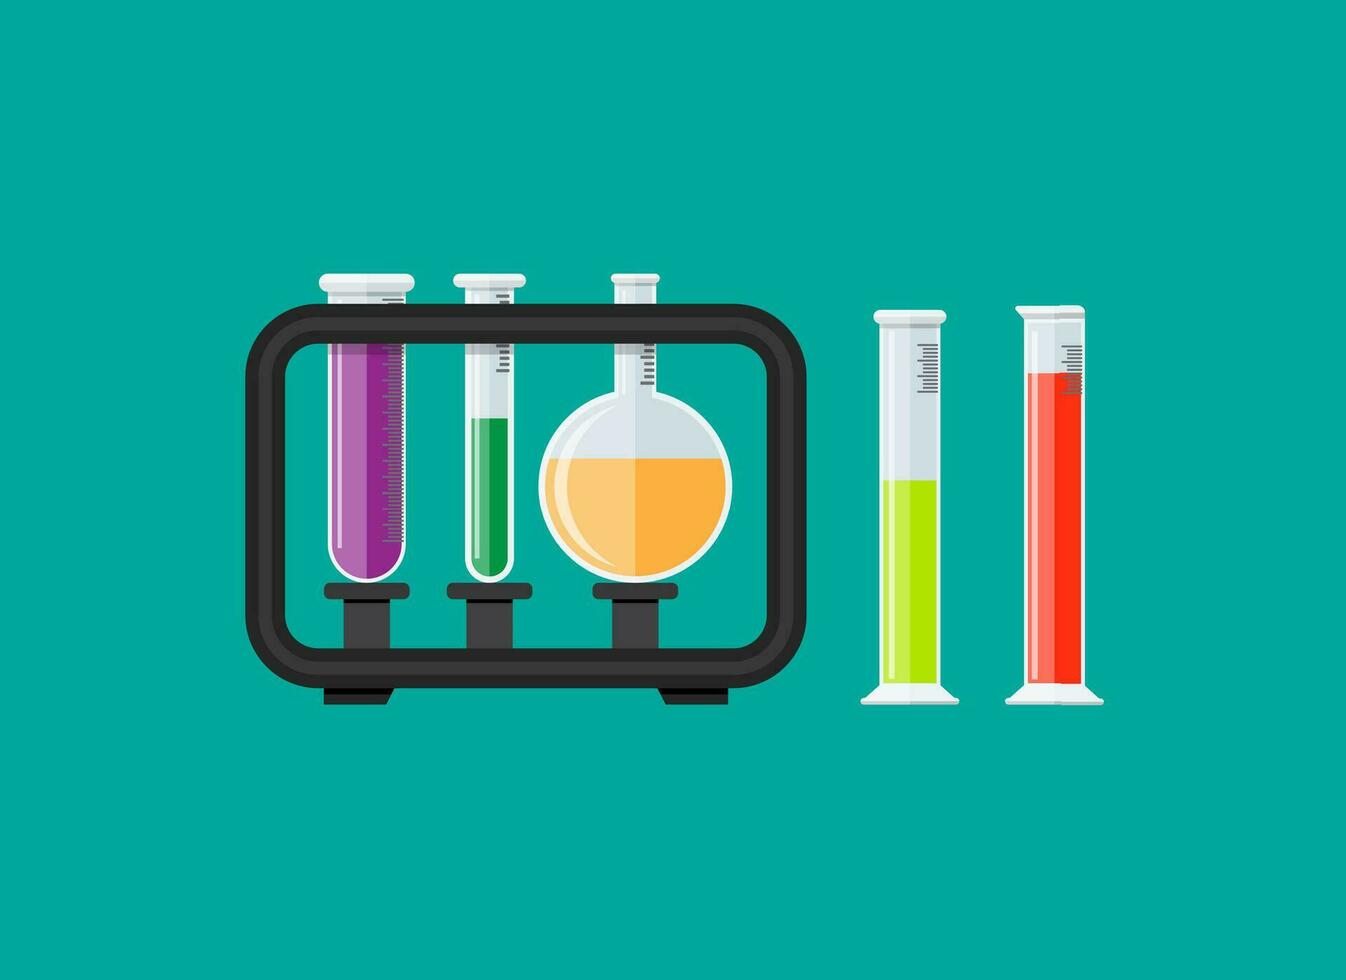 test glas buizen in rek. biologie wetenschap onderwijs medisch testen. vector illustratie in vlak stijl